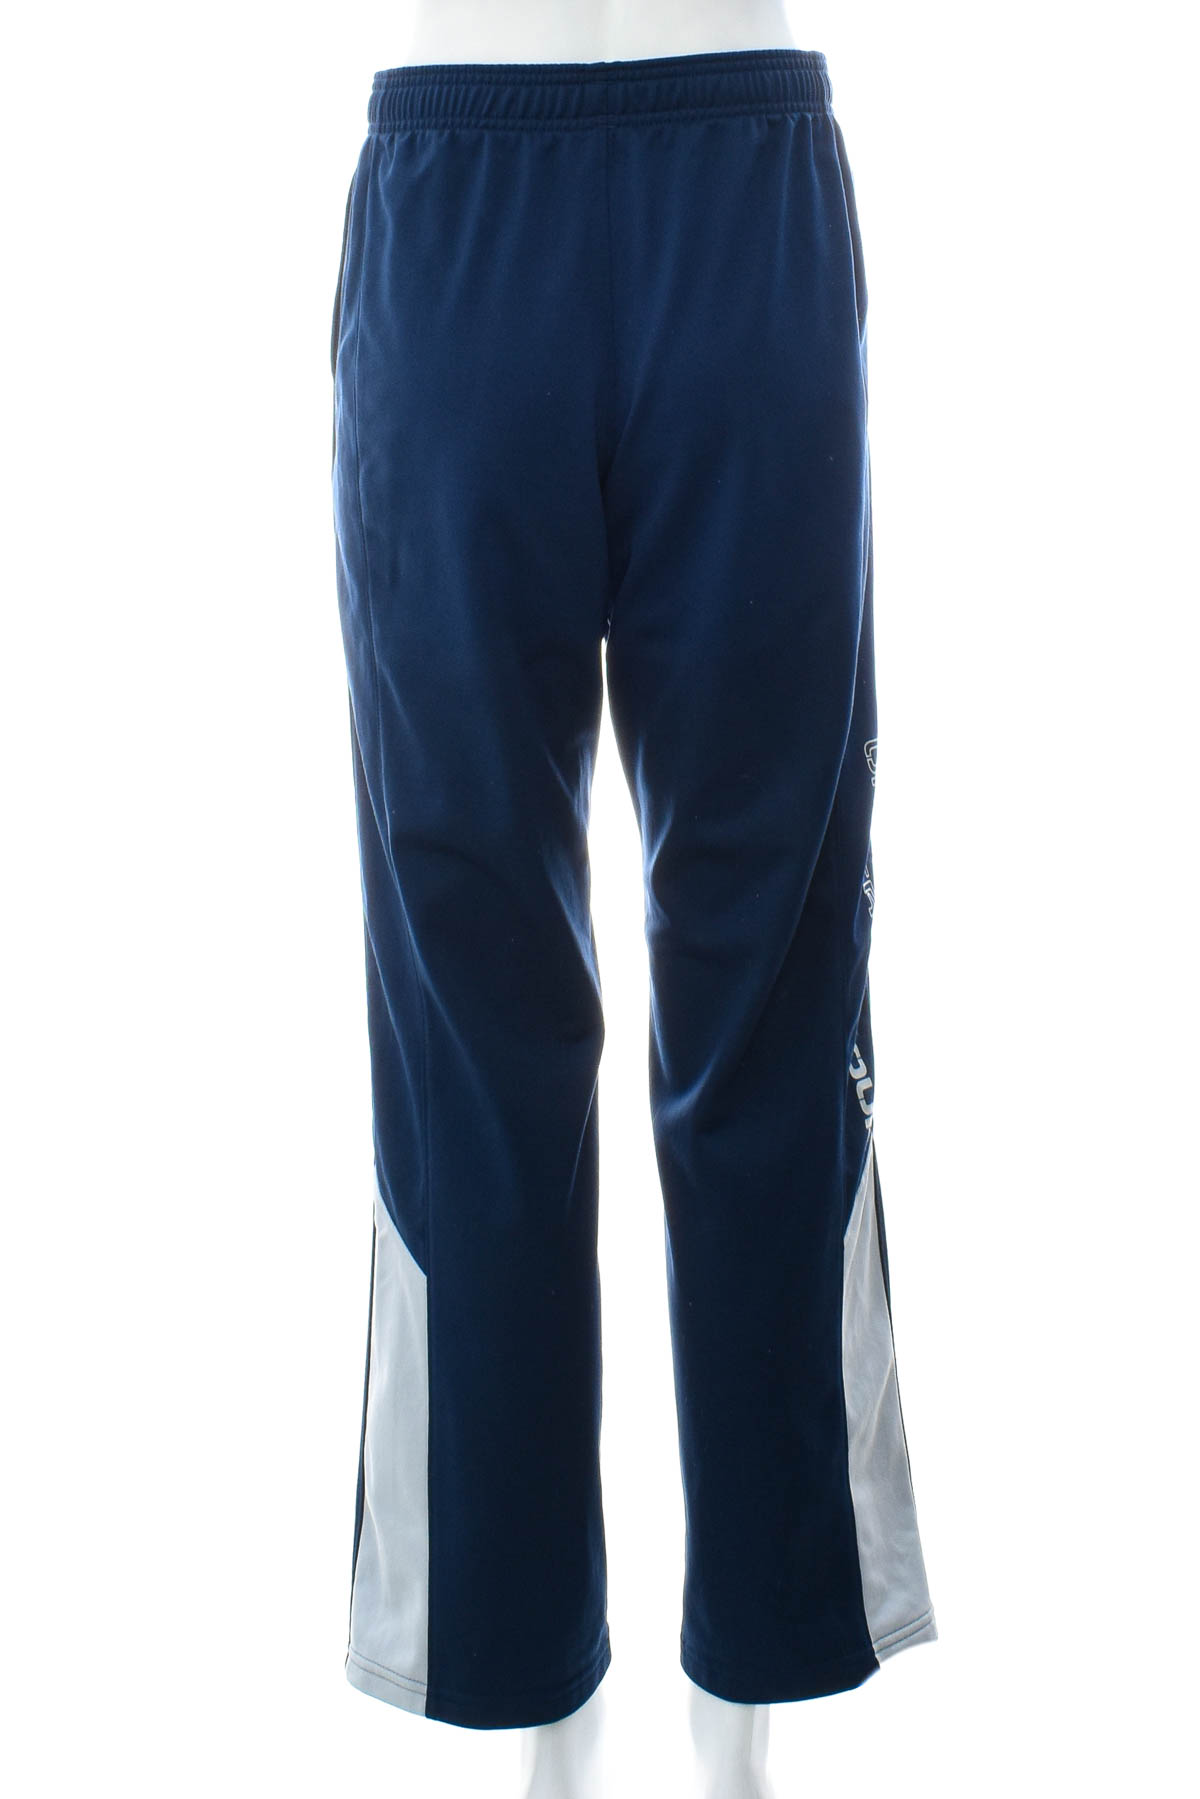 Pantaloni de sport pentru băiat - UNDER ARMOUR - 1